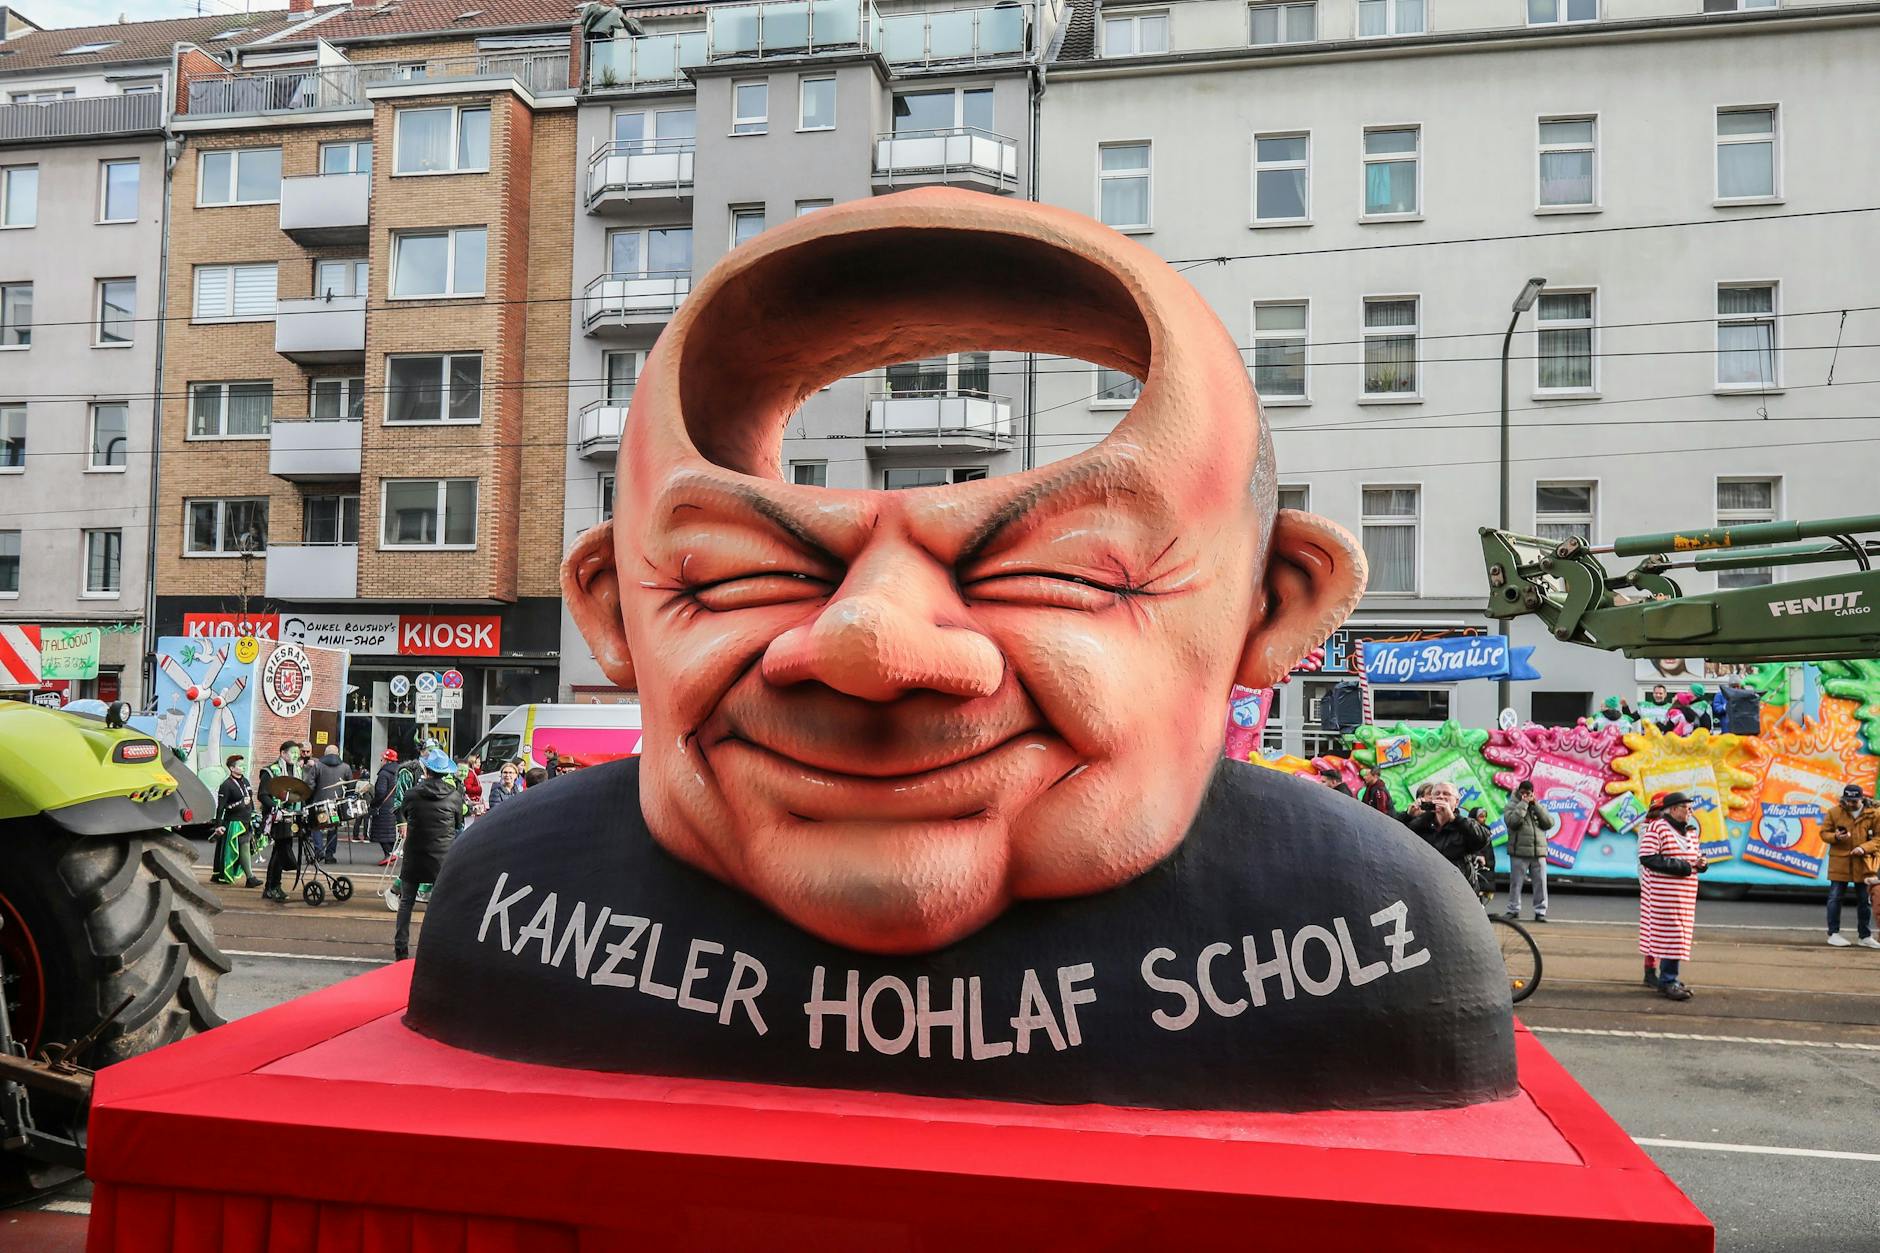 Beim Düsseldorfer Rosenmontagszug zeigte ein Wagen des bekannten Wagenbauers Jacques Tilly Bundeskanzler Scholz und betitelte ihn als „Hohlaf Scholz“.